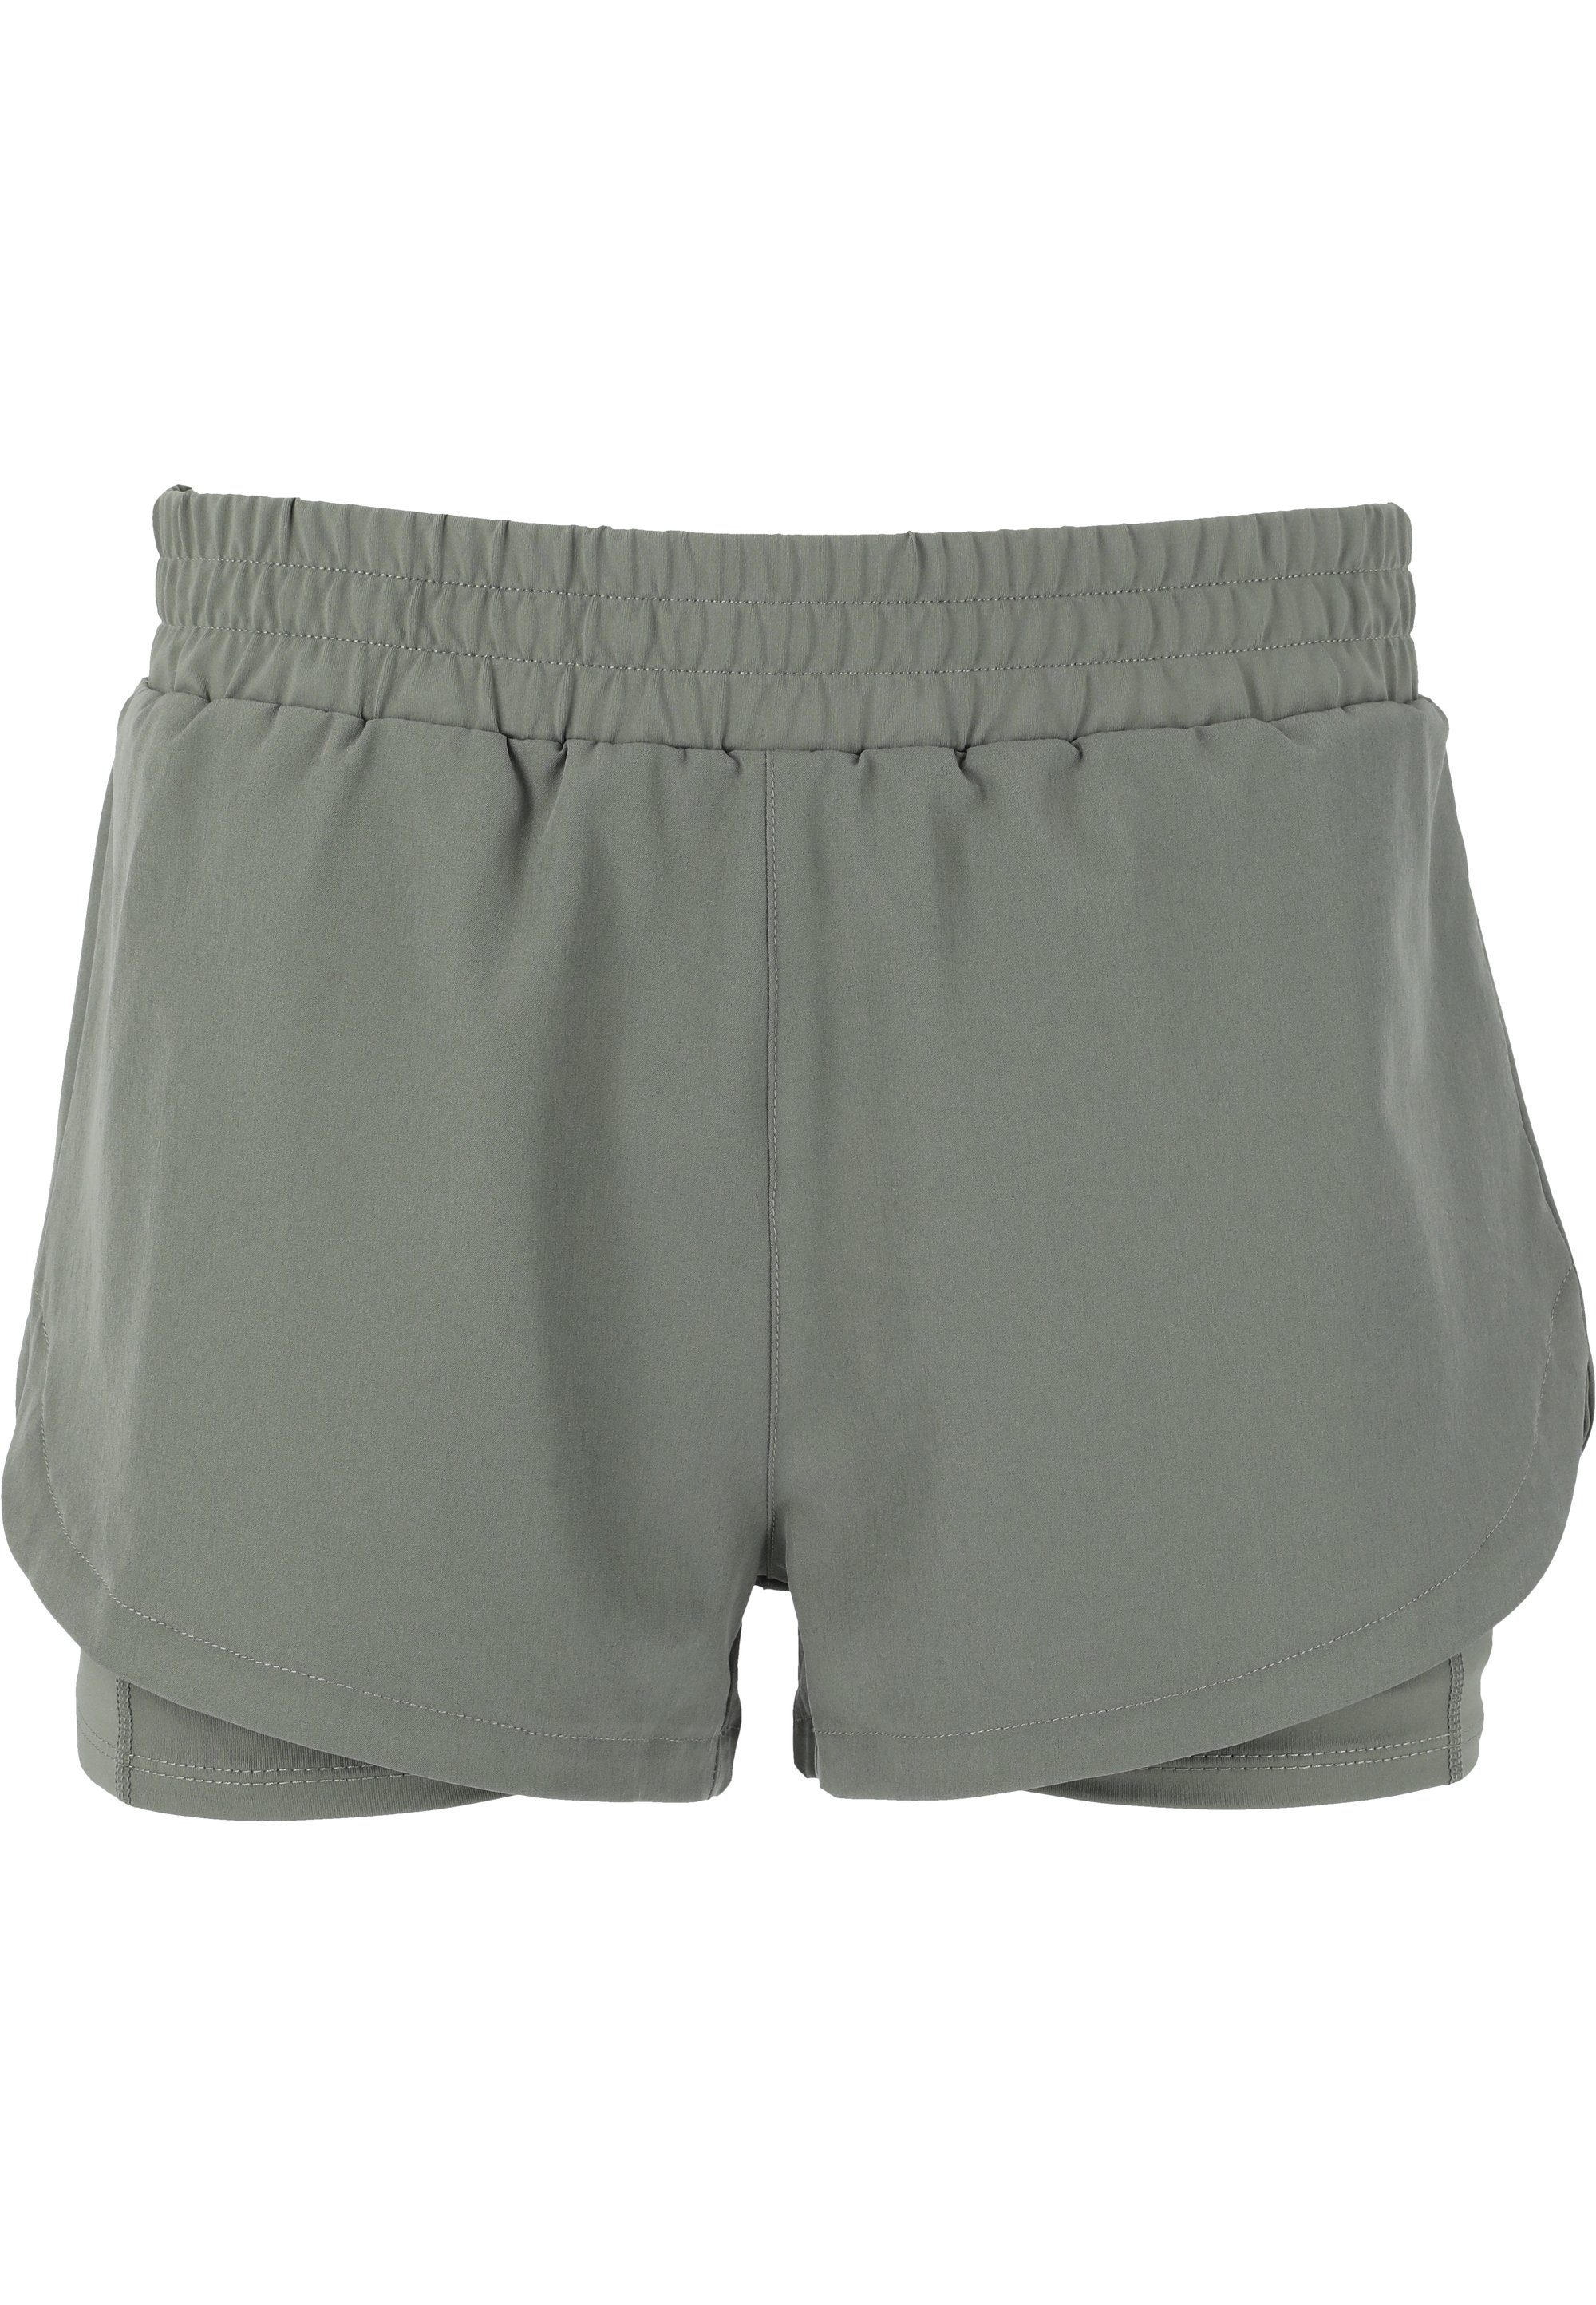 praktischer grün Shorts mit Yarol ENDURANCE 2-in-1-Funktion